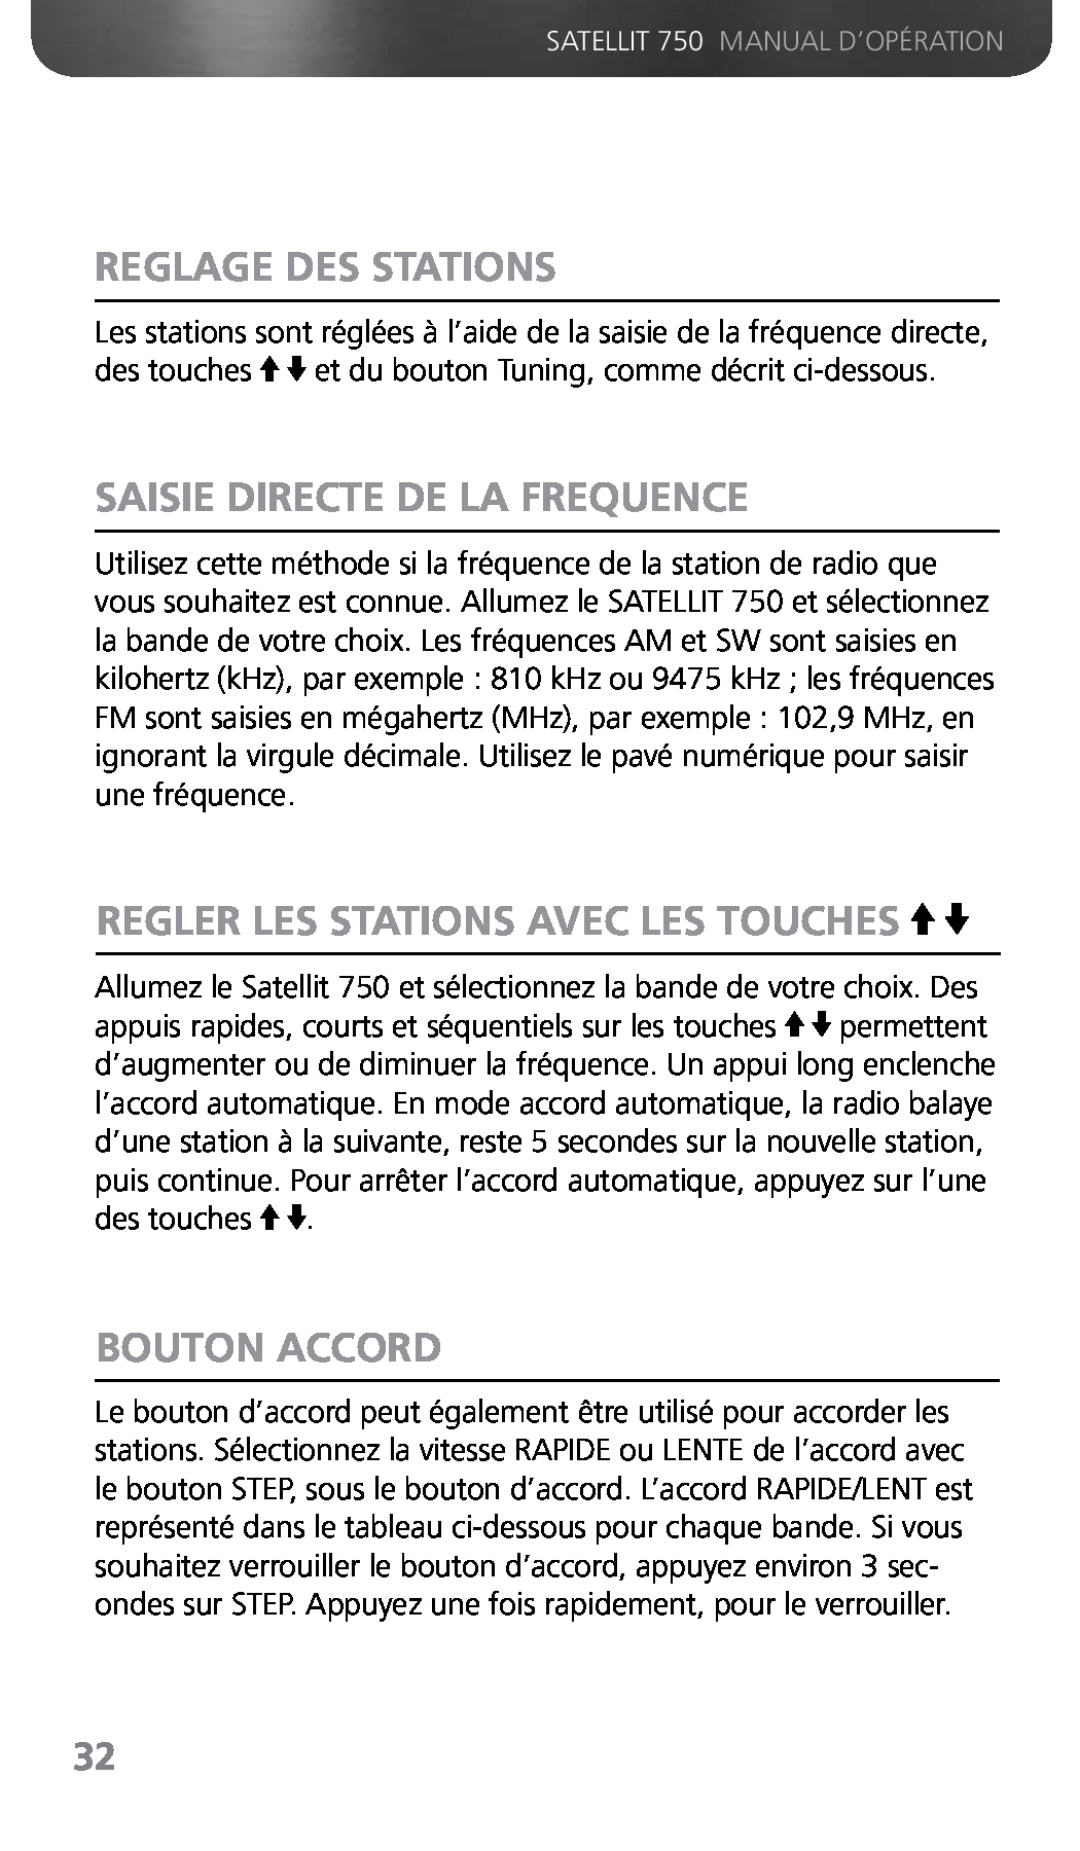 Grundig 750 Reglage Des Stations, Saisie Directe De La Frequence, Regler Les Stations Avec Les Touches, Bouton Accord 